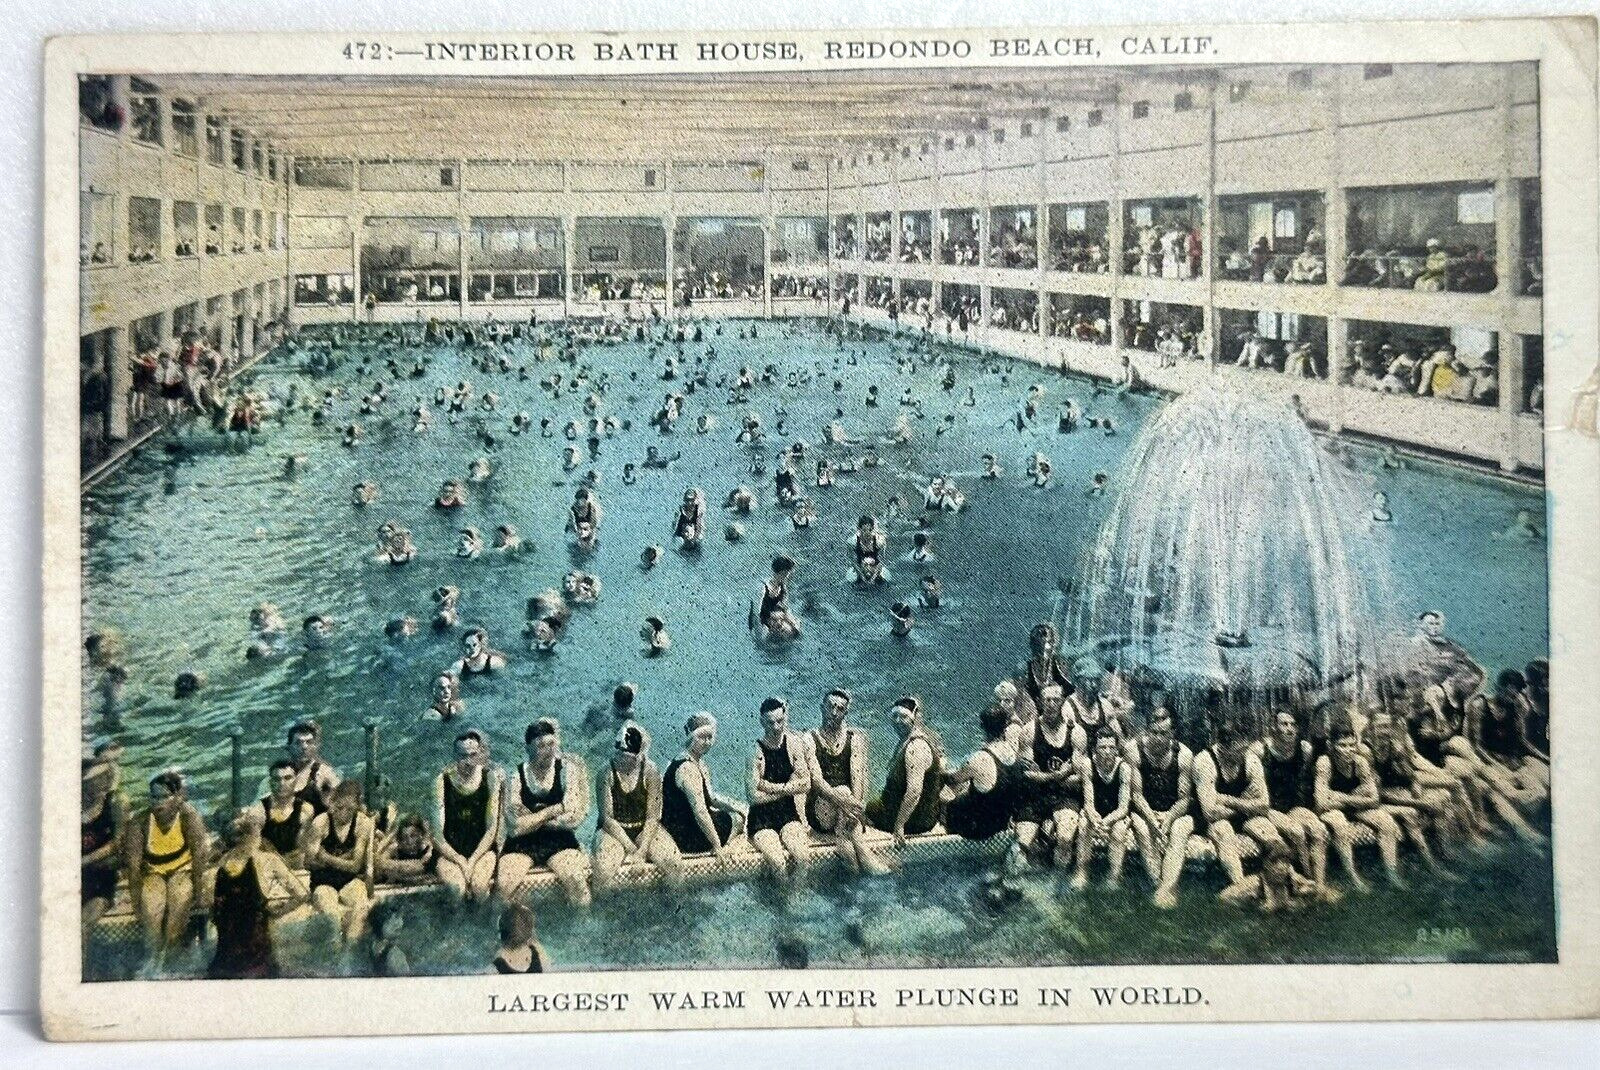 Redondo Beach Ca Interior Bath House Natatorium Swimming Pool Largest in World